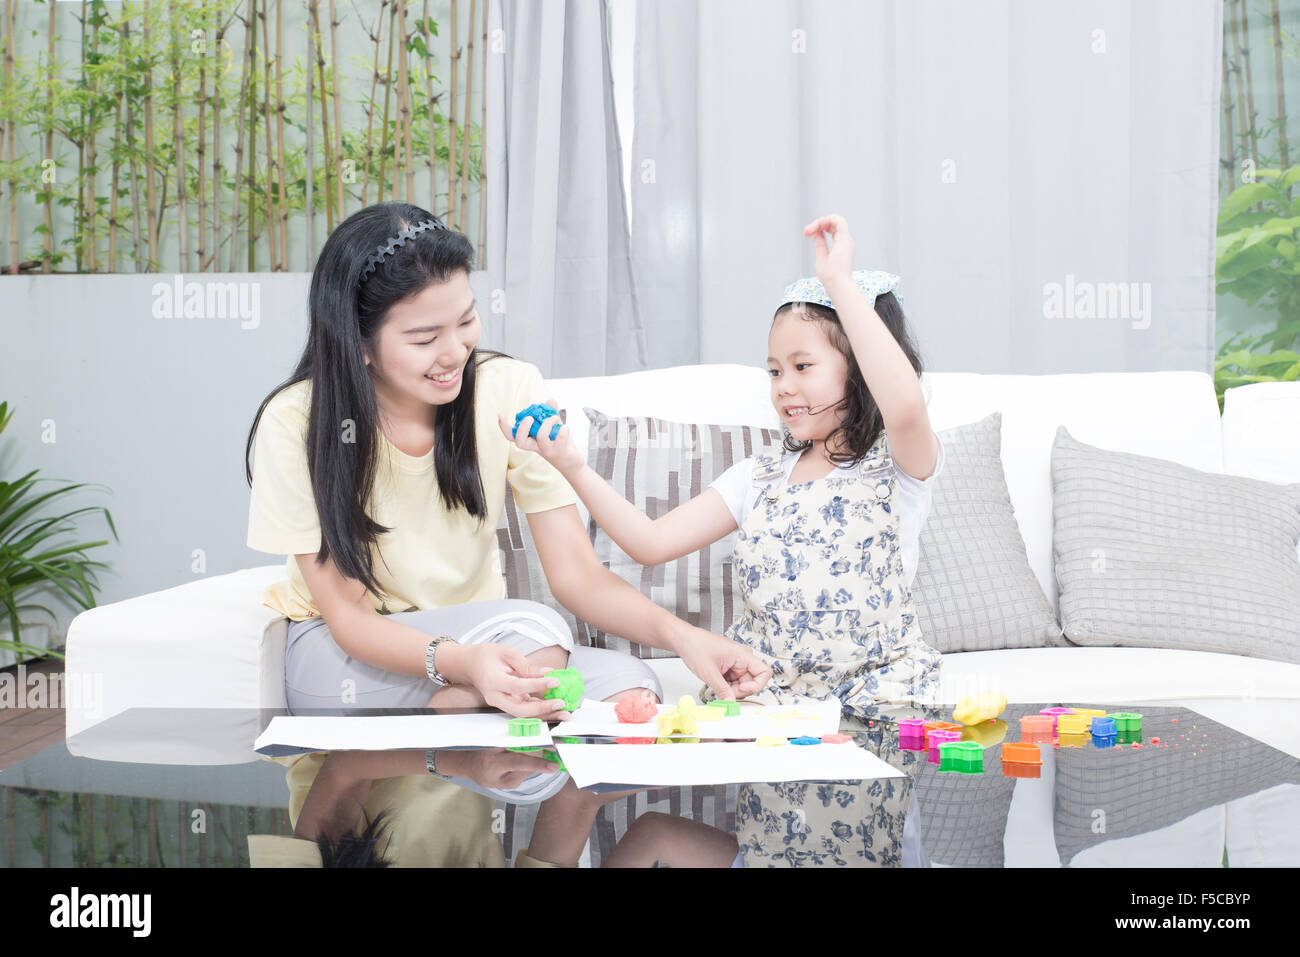 Familie, Kinder und glückliche Menschen Konzept - asiatische Mutter und Kind Tochter spielt mit Plastilin in Haus Stockfoto